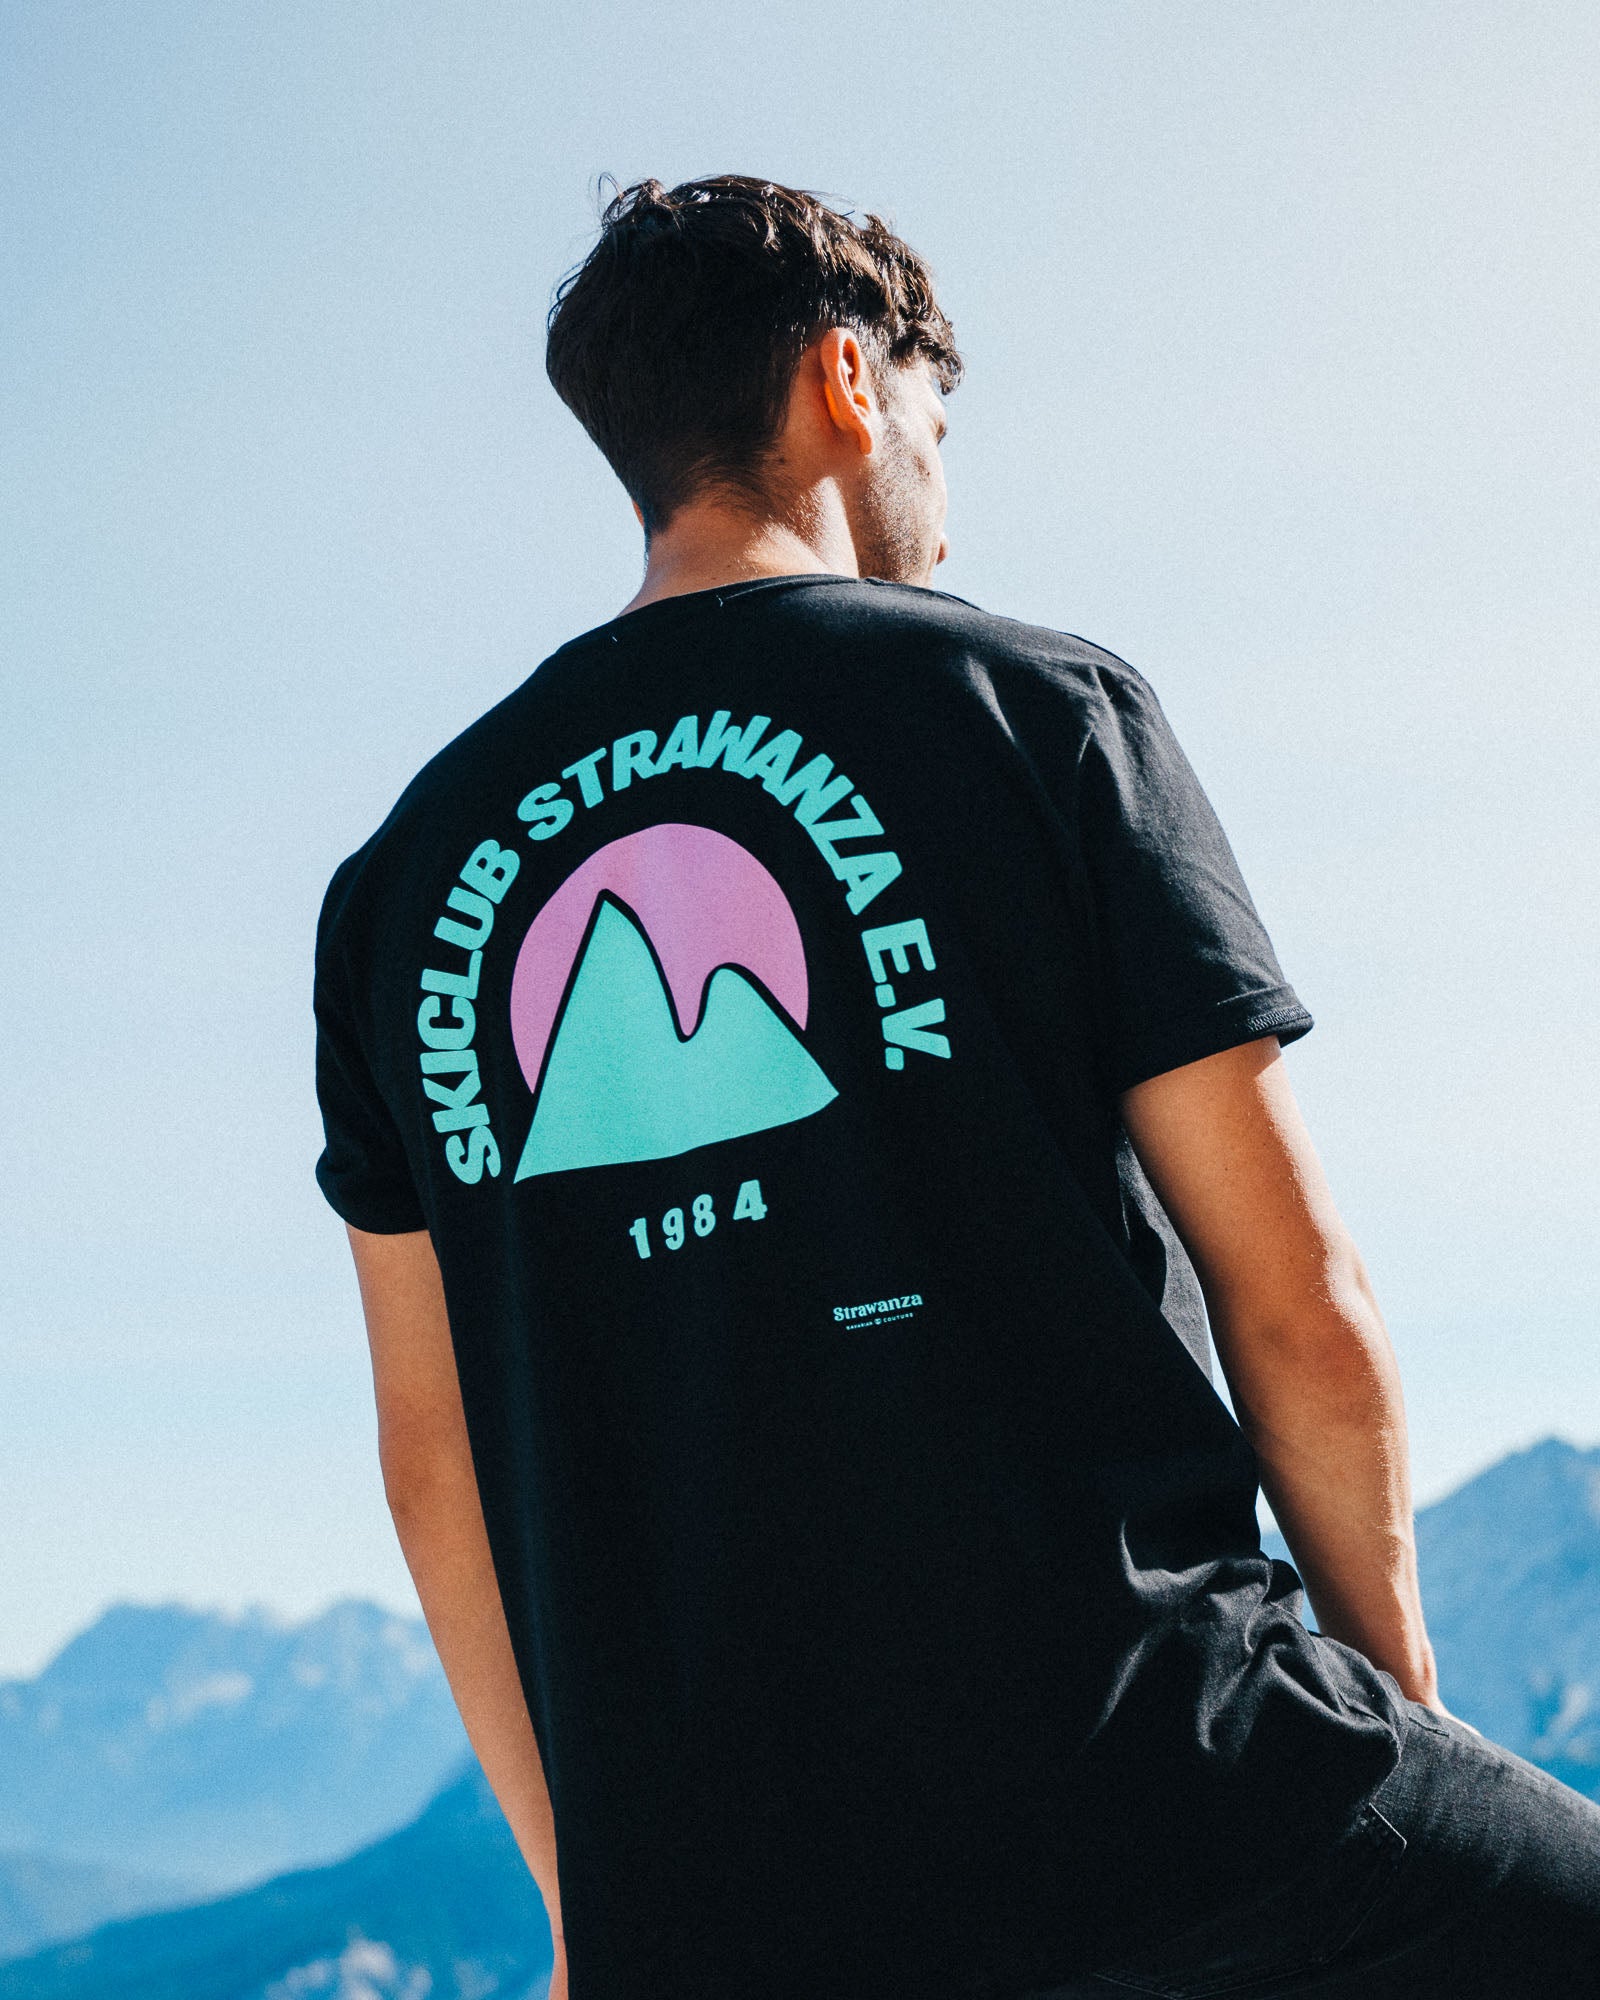 Ein männliches Model trägt ein schwarzes T-Shirt mit einem Backprint in den Bergen, was aus einem türkisen Berg, einer pinken Sonne und einem türkisen 